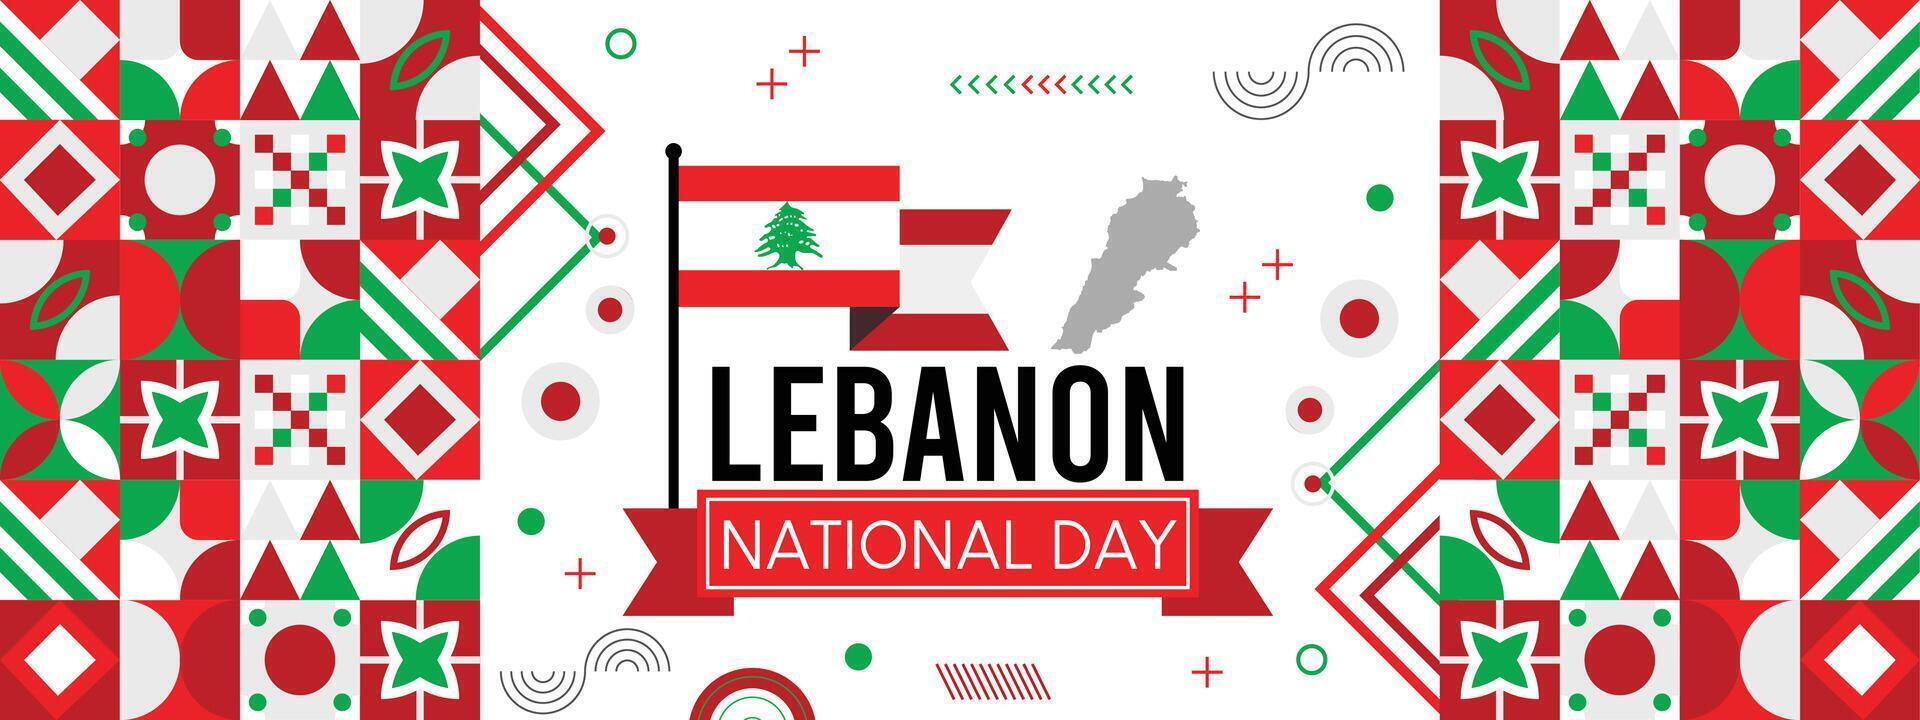 Líbano nacional día bandera con mapa, bandera colores tema antecedentes y geométrico resumen retro moderno colorido diseño vector